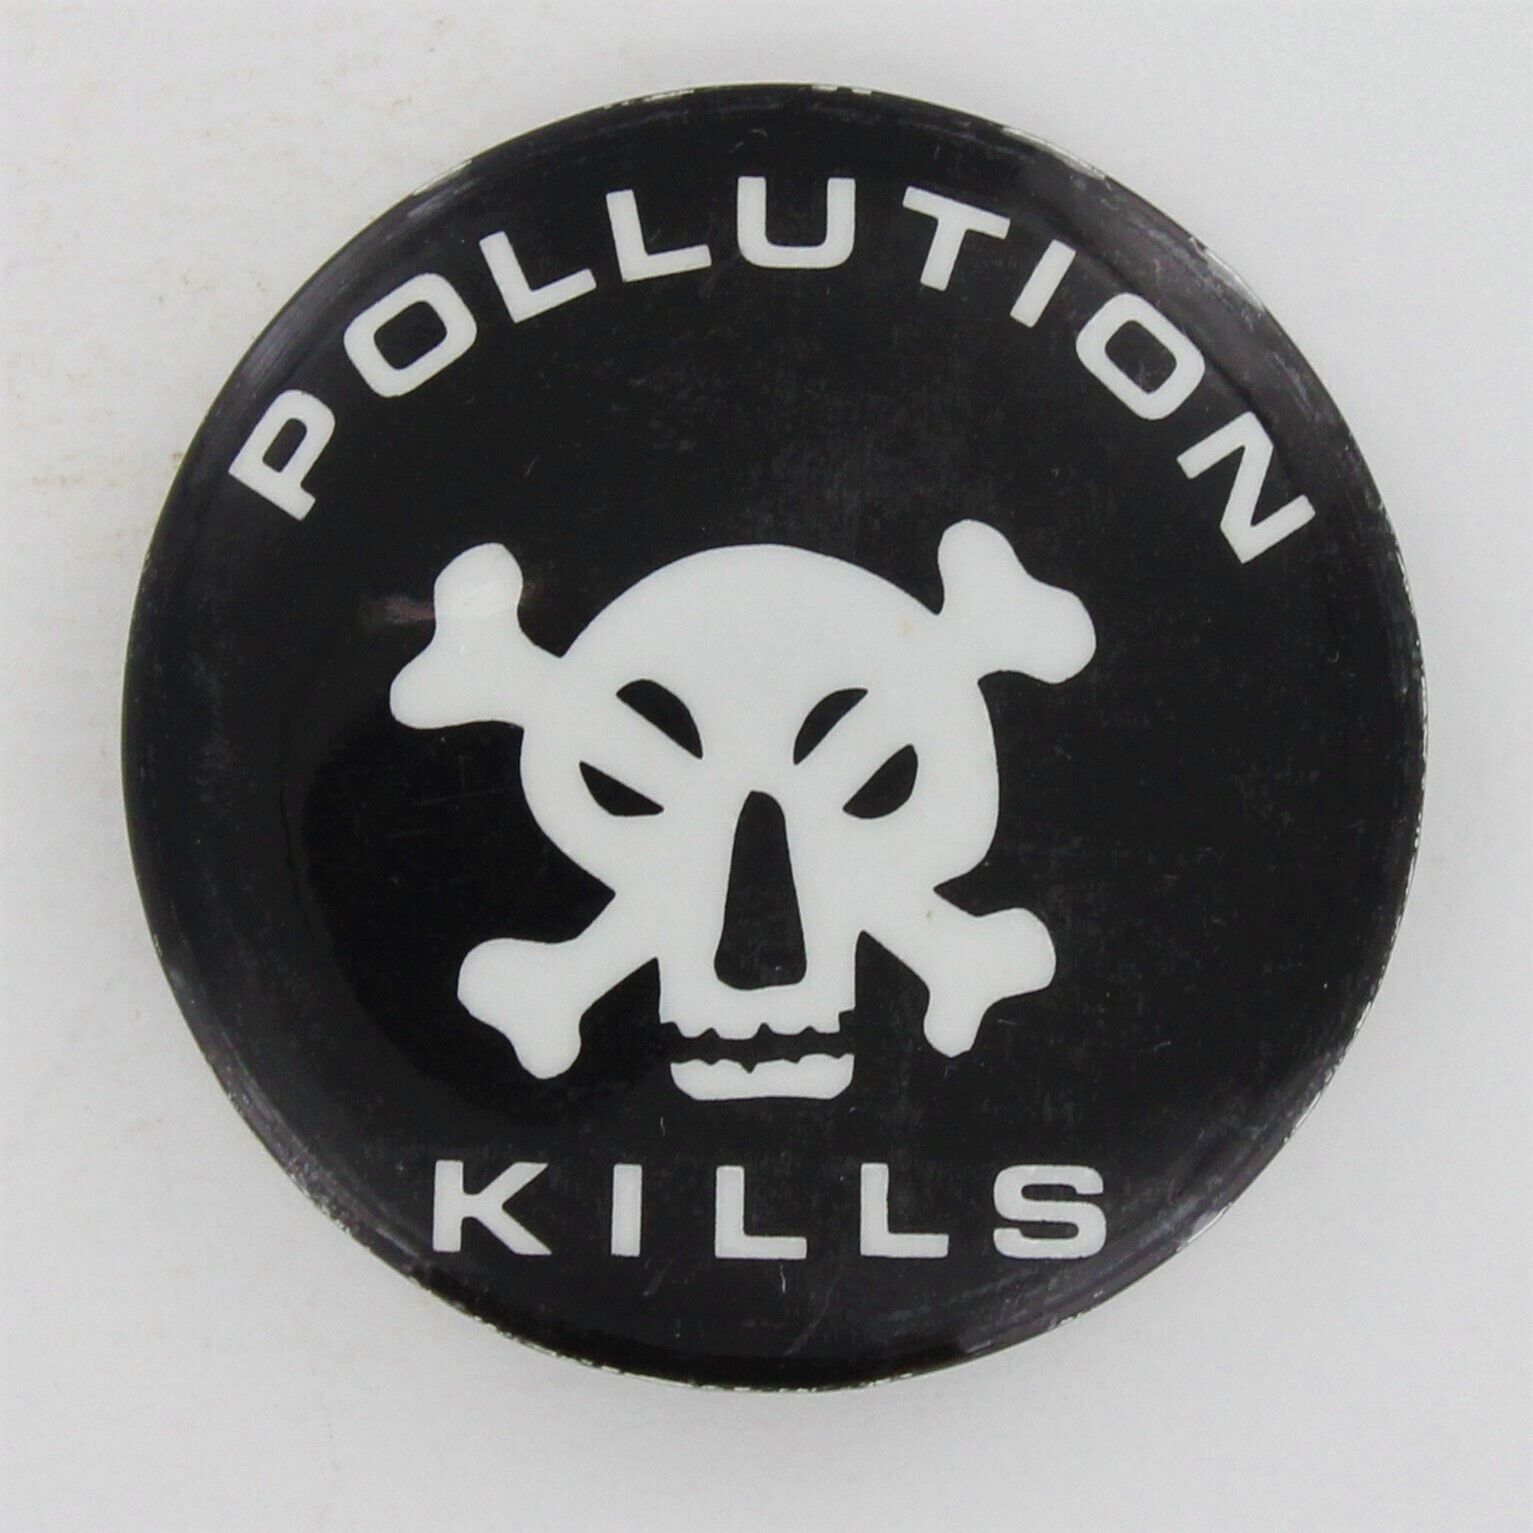 Skull & Bones 1967 Pollution Death Environment Danger Warning Toxic Earth P1015